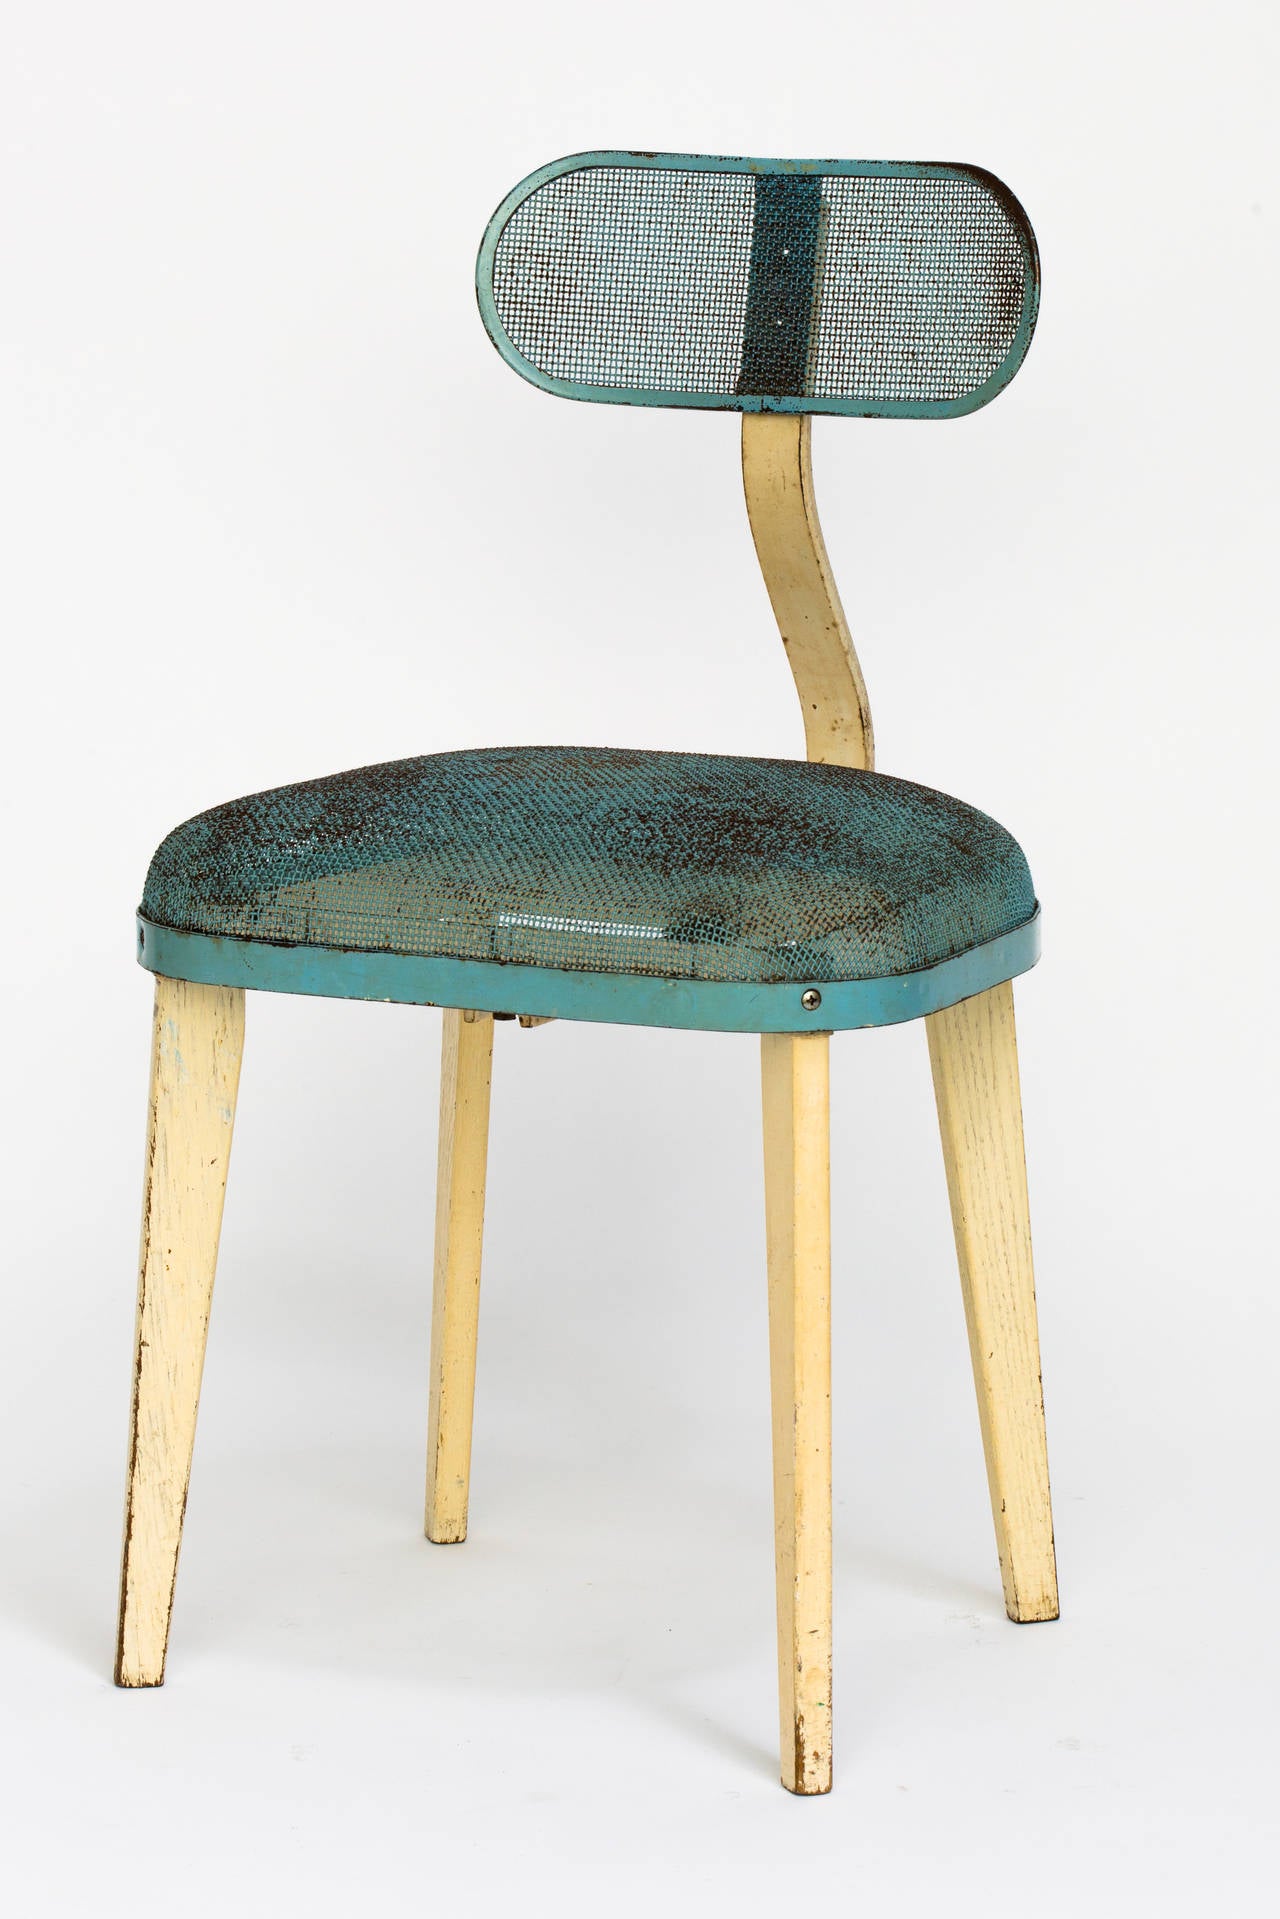 Stuhl im Industriestil aus blau und beige emailliertem Stahl im Stil von Jean Prouve.
Verstellbare Rückenlehne und Holzbeine.